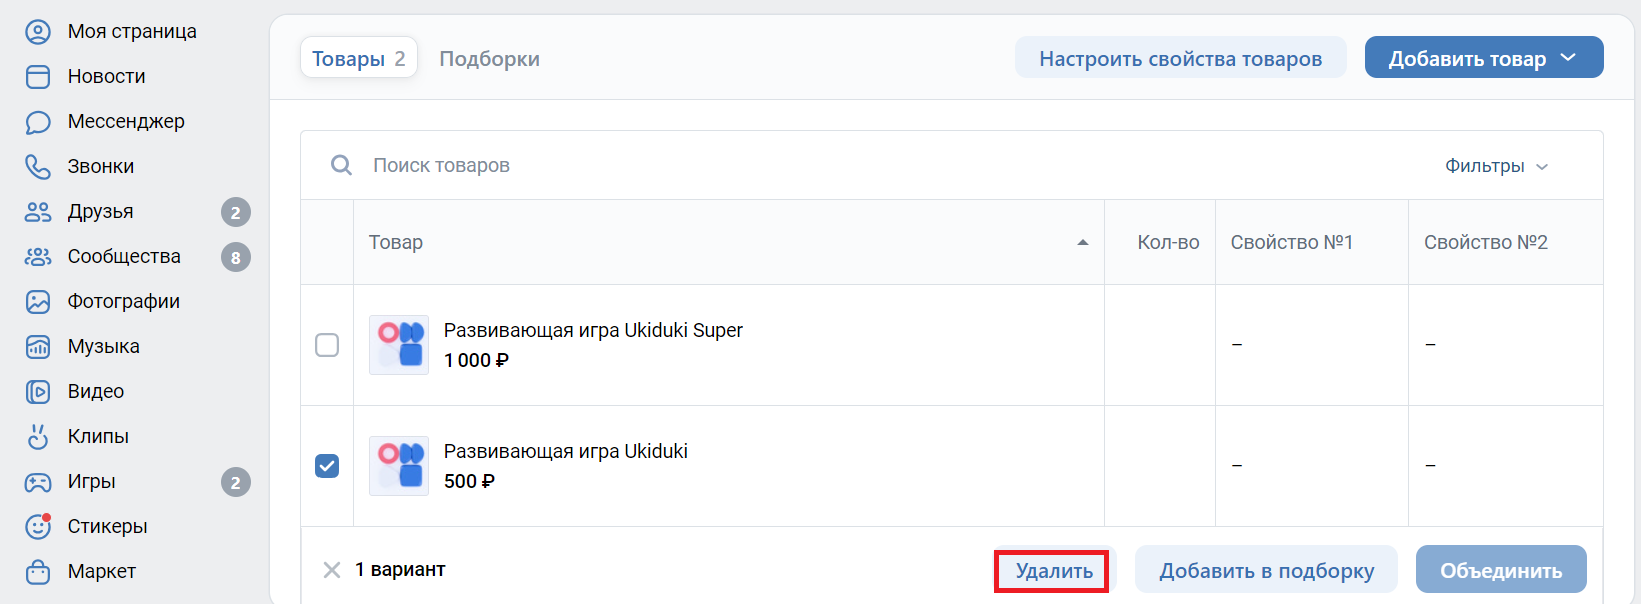 В магазине во Вконтакте также можно удалить несколько товаров